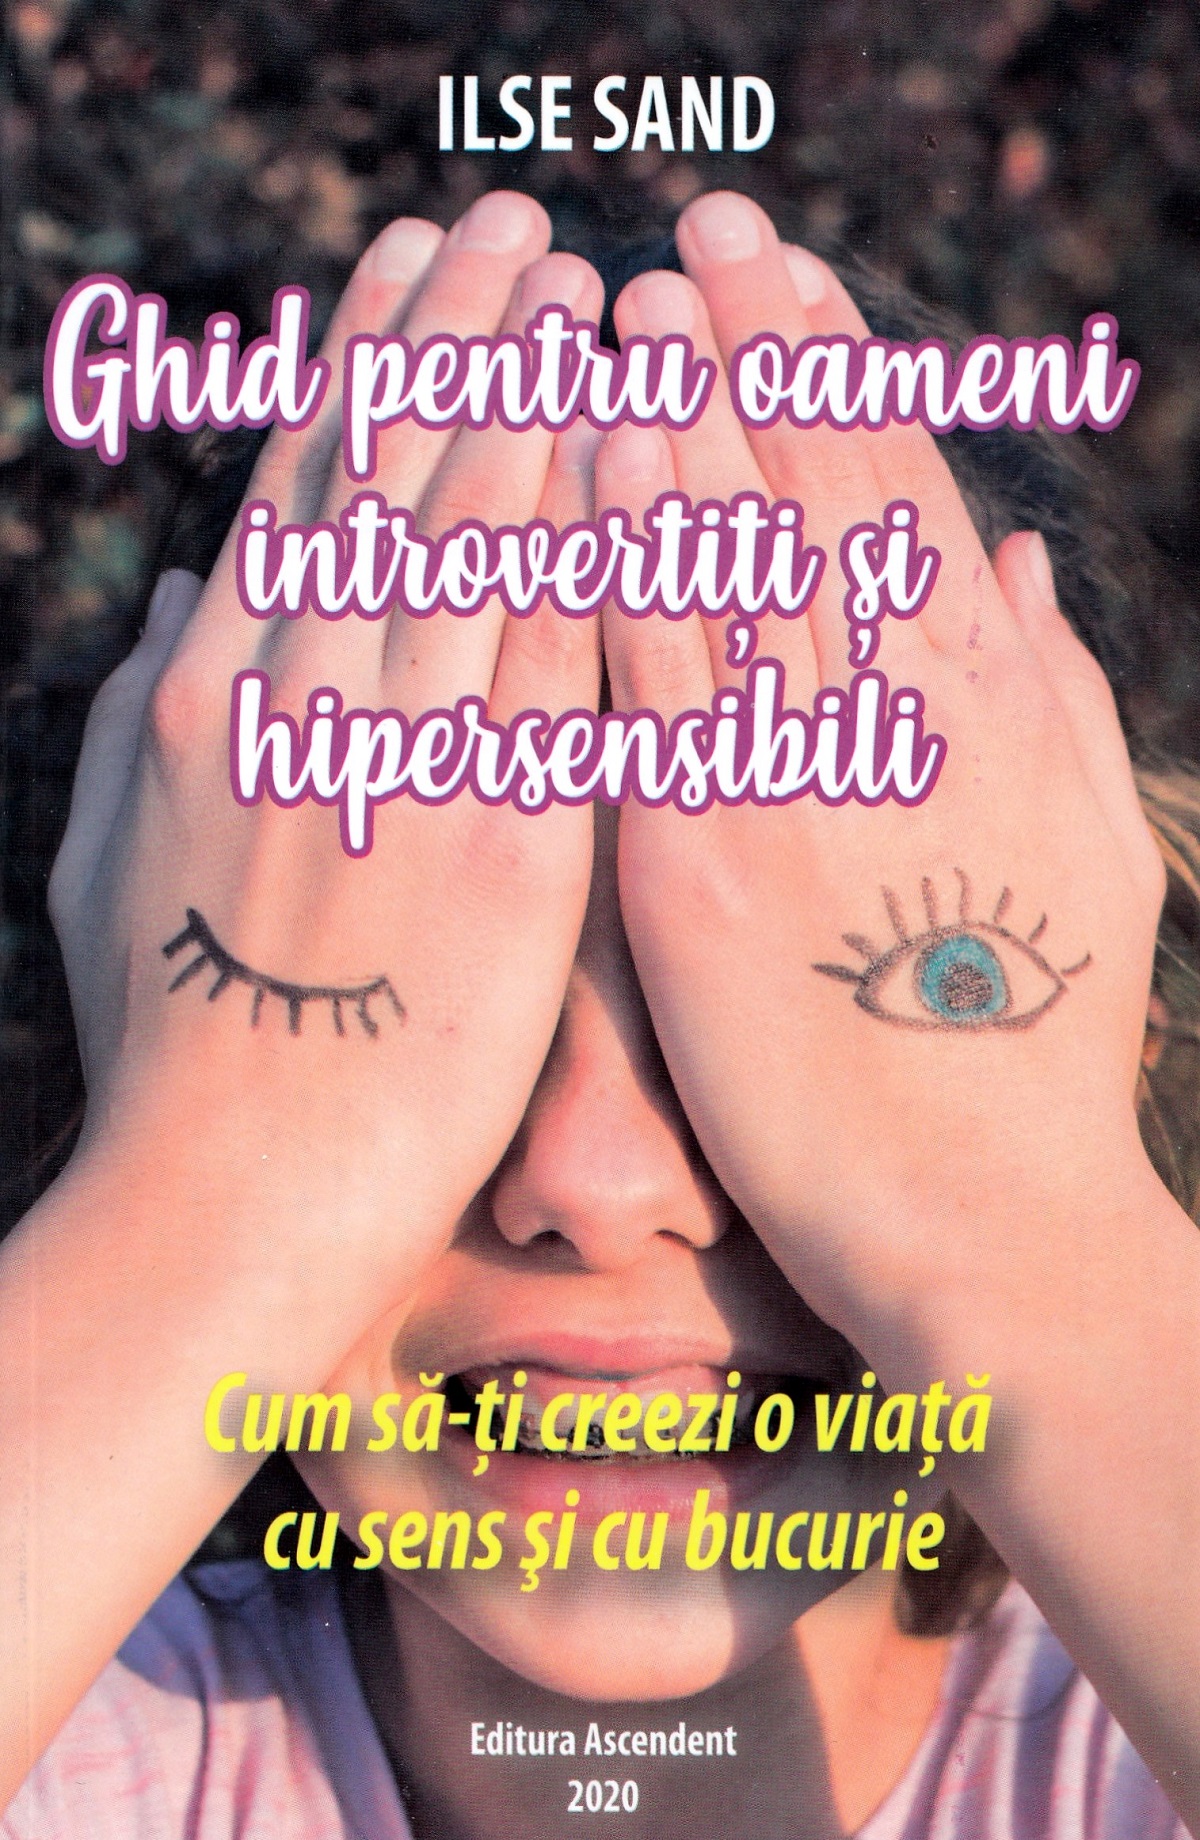 Ghid pentru oameni introvertiti si hipersensibili - Ilse Sand